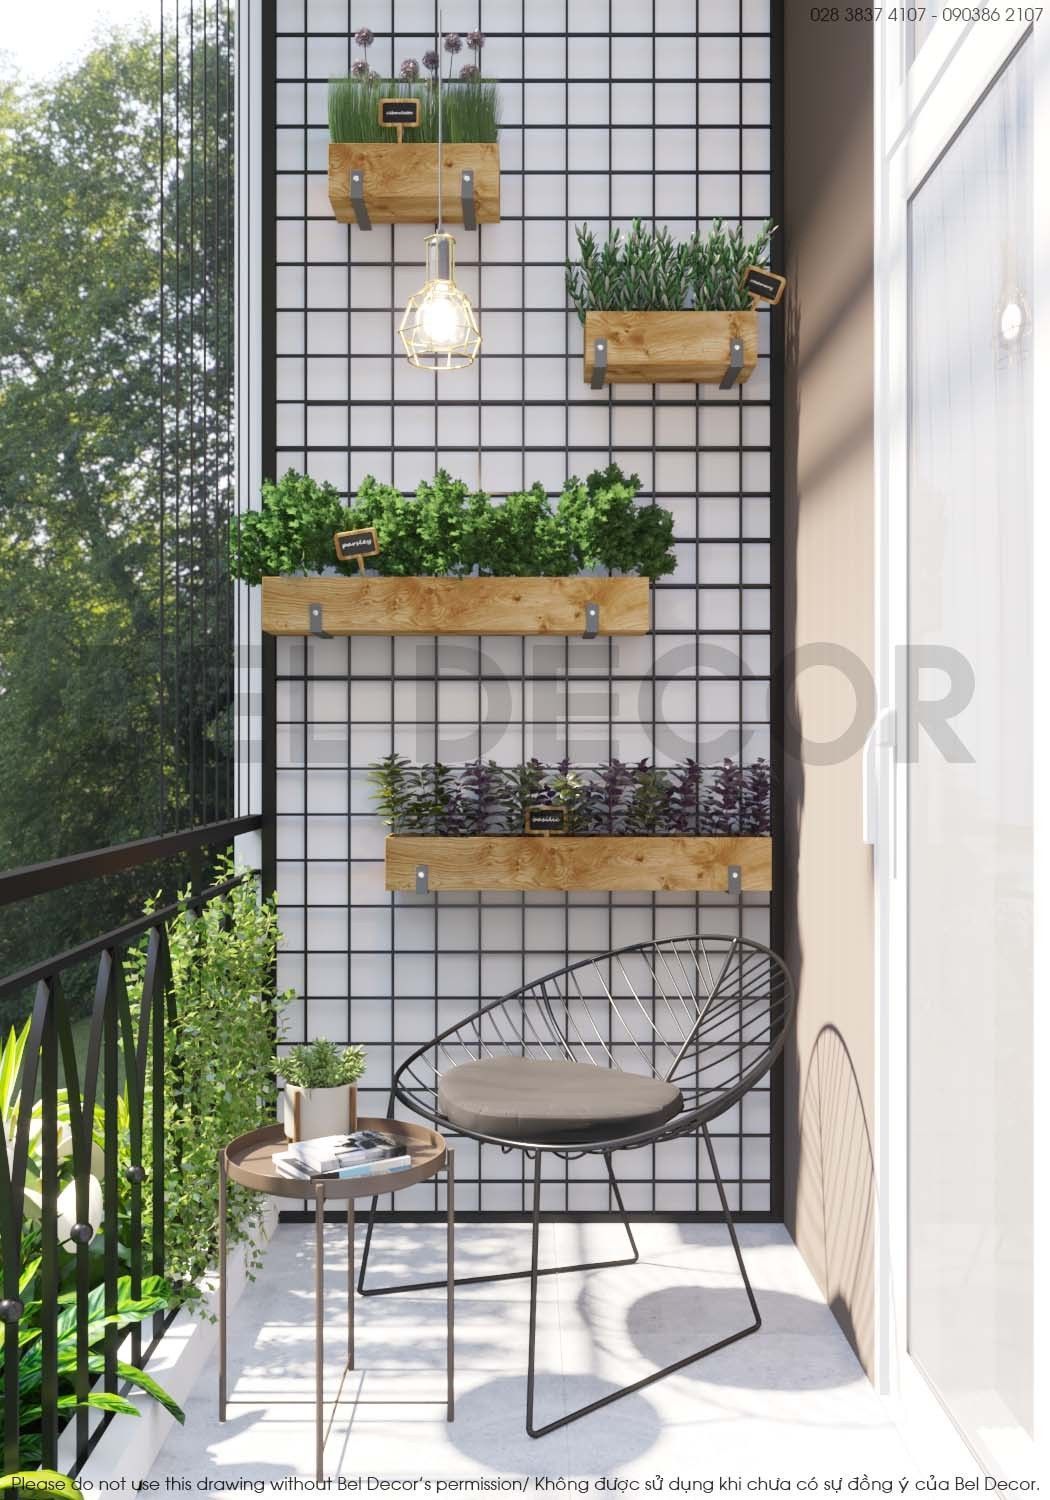 deco interior -   garden design Inspiration apartments